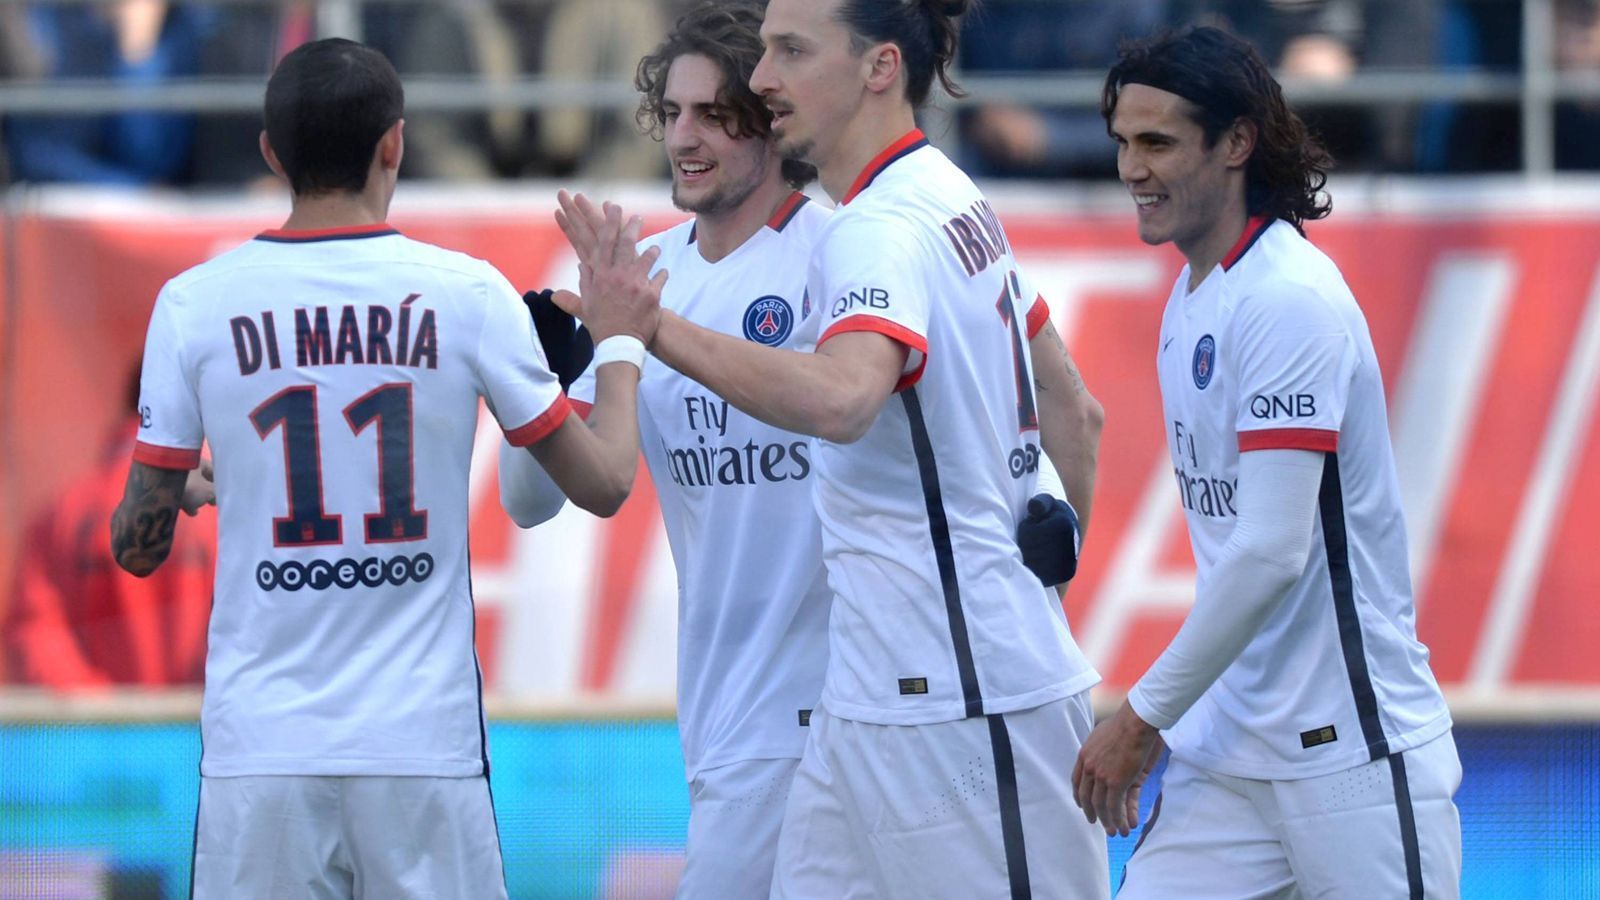 
                <strong>Höchster Auswärtssieg Ligue 1</strong><br>
                Den höchsten Auswärtssieg landete Paris St. Germain, am 13. März 2016 gewann das Team um Superstar Zlatan Ibrahimovic bei ESTAC Troyes 9:0.
              